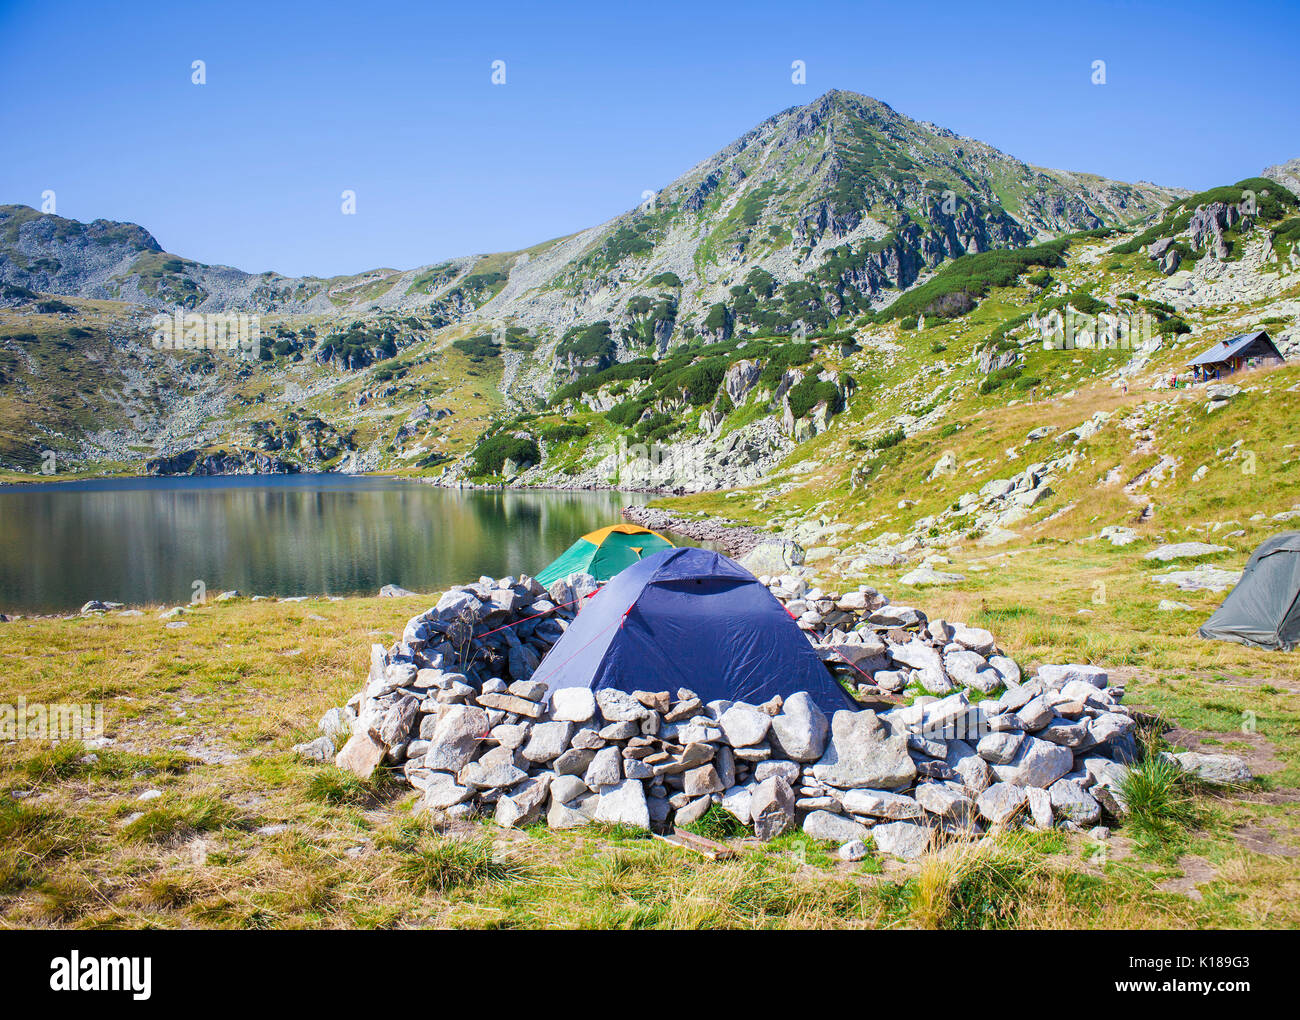 Zelten in der Nähe von bucura Gletscher See in Retezat Mountain, Rumänien  Stockfotografie - Alamy